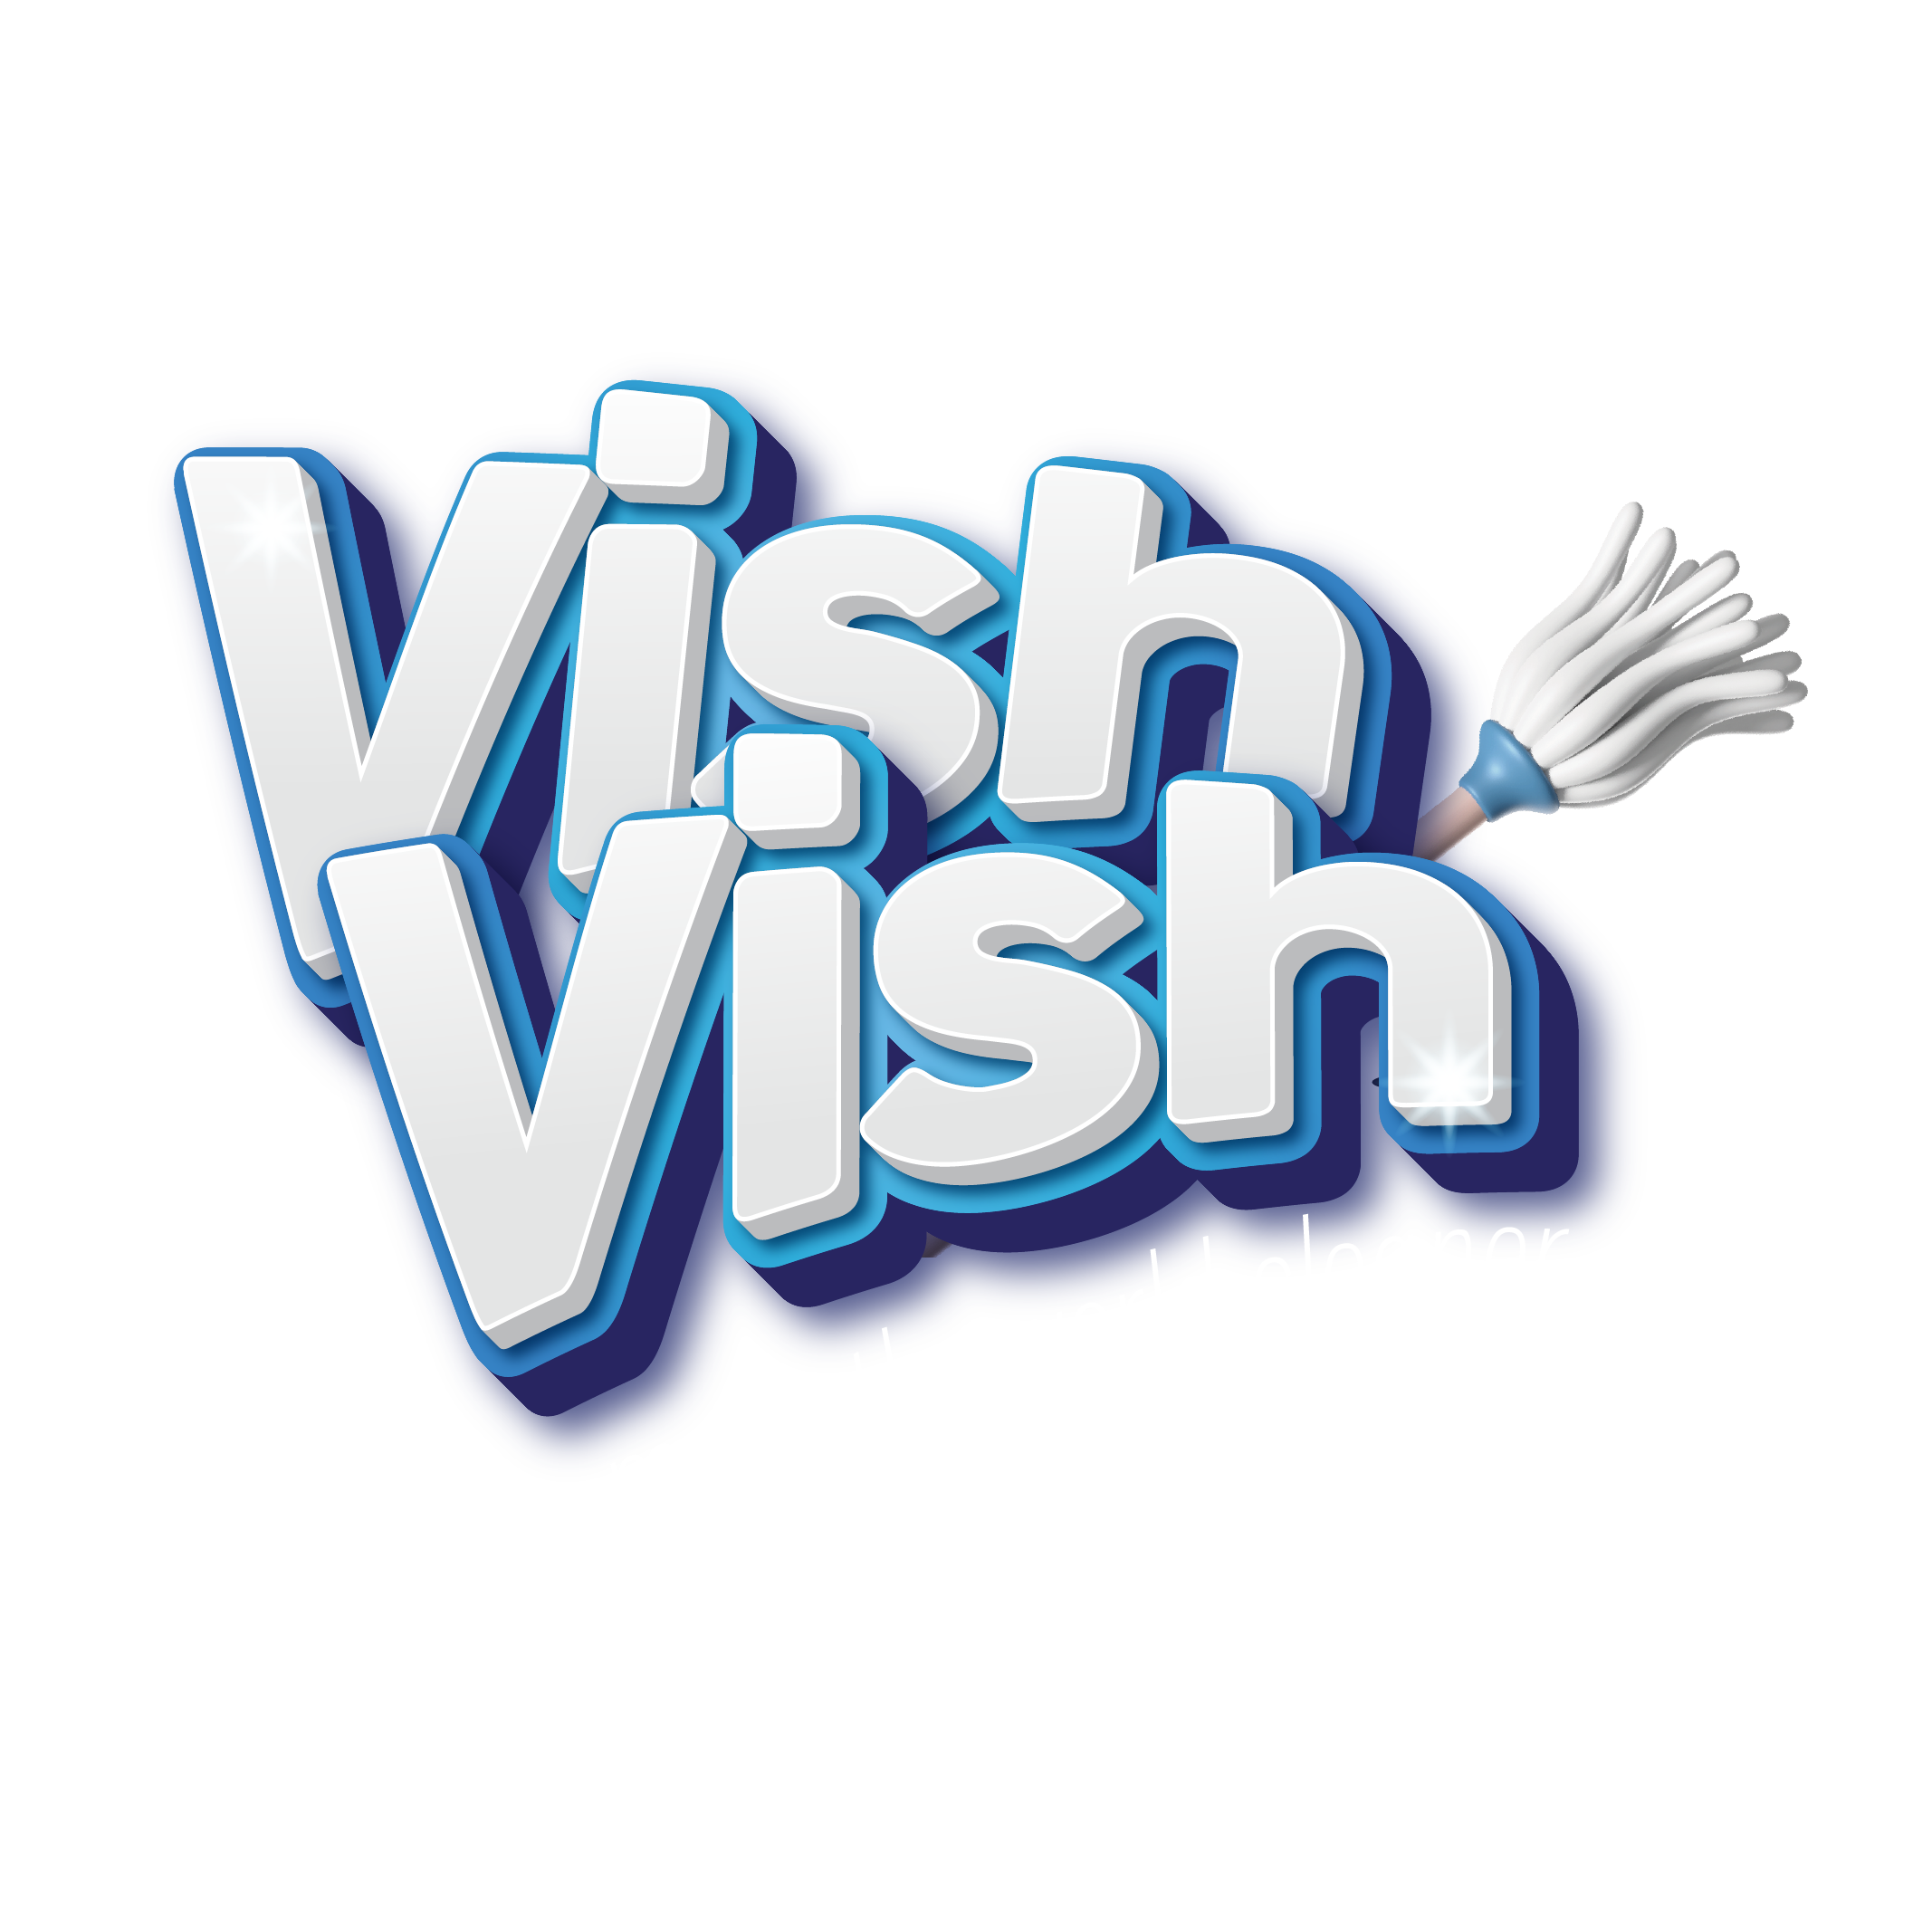 קבל את אפליקציית Vish Vish